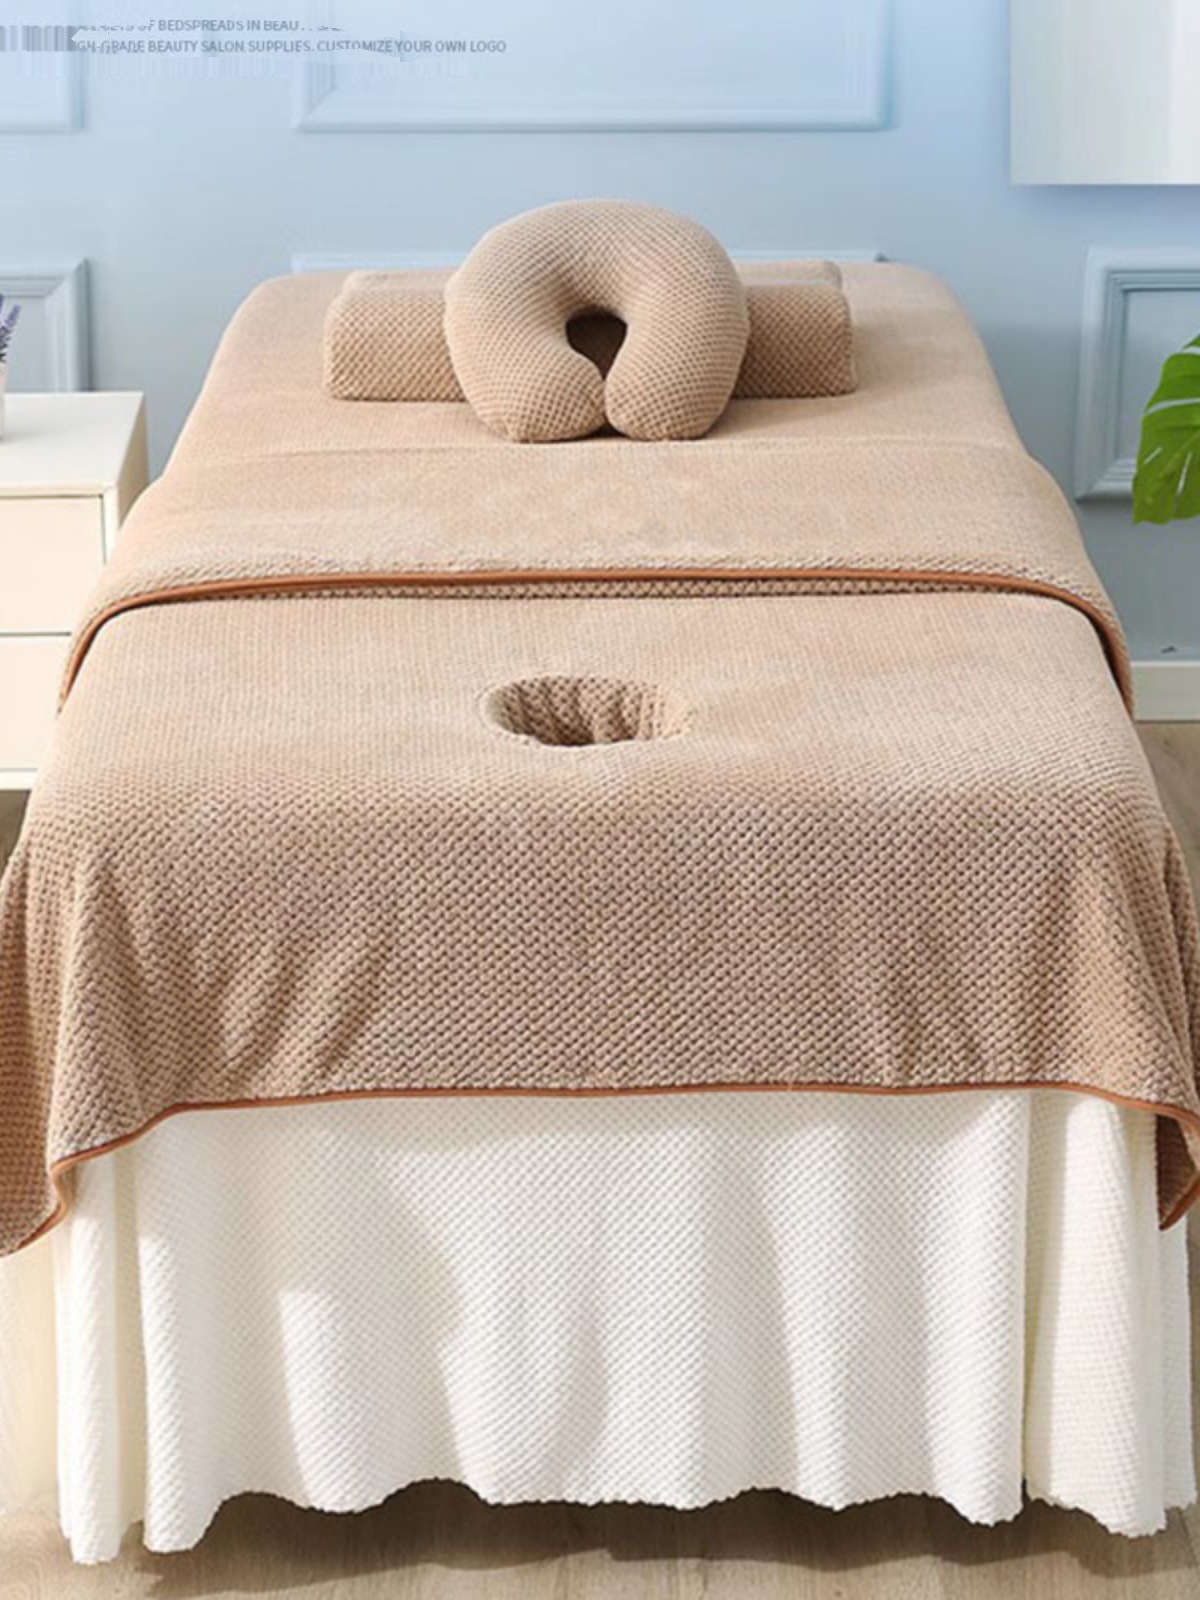 美容床单美容院铺床端纯色加大吸水绒盖巾毯柔软床单纯色